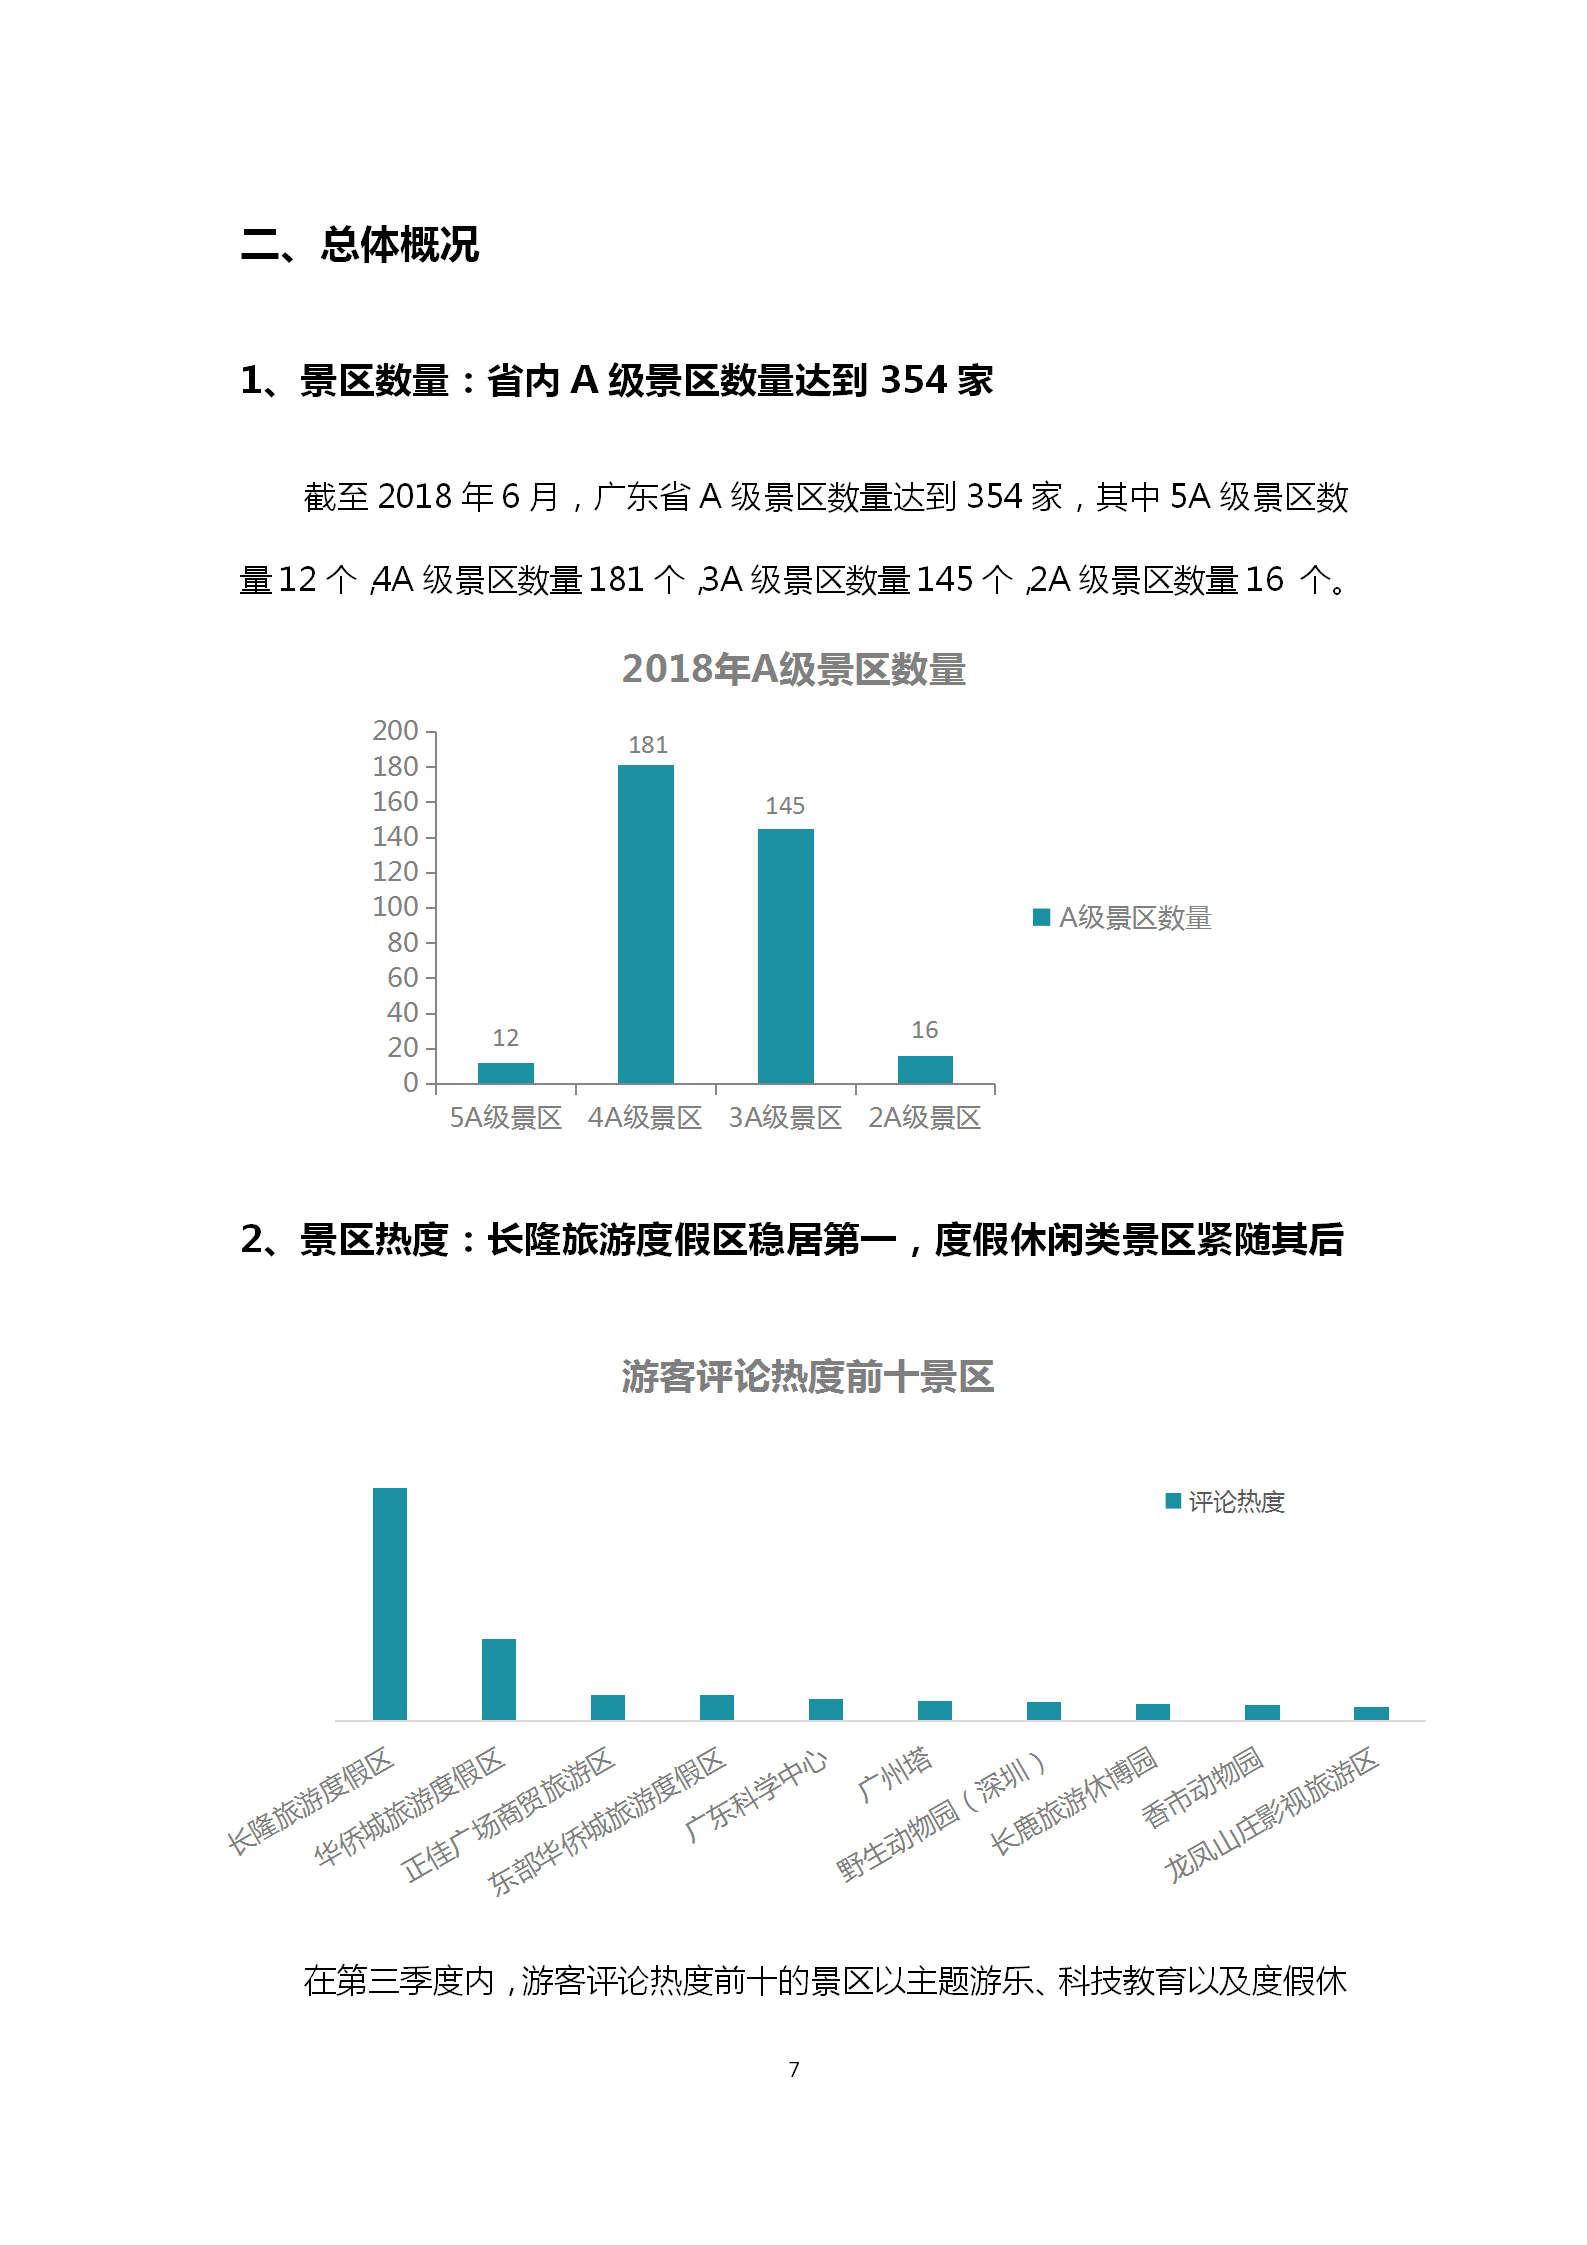 广东省旅游景区游客满意度大数据调查报告-2018年第三季度20181106_08